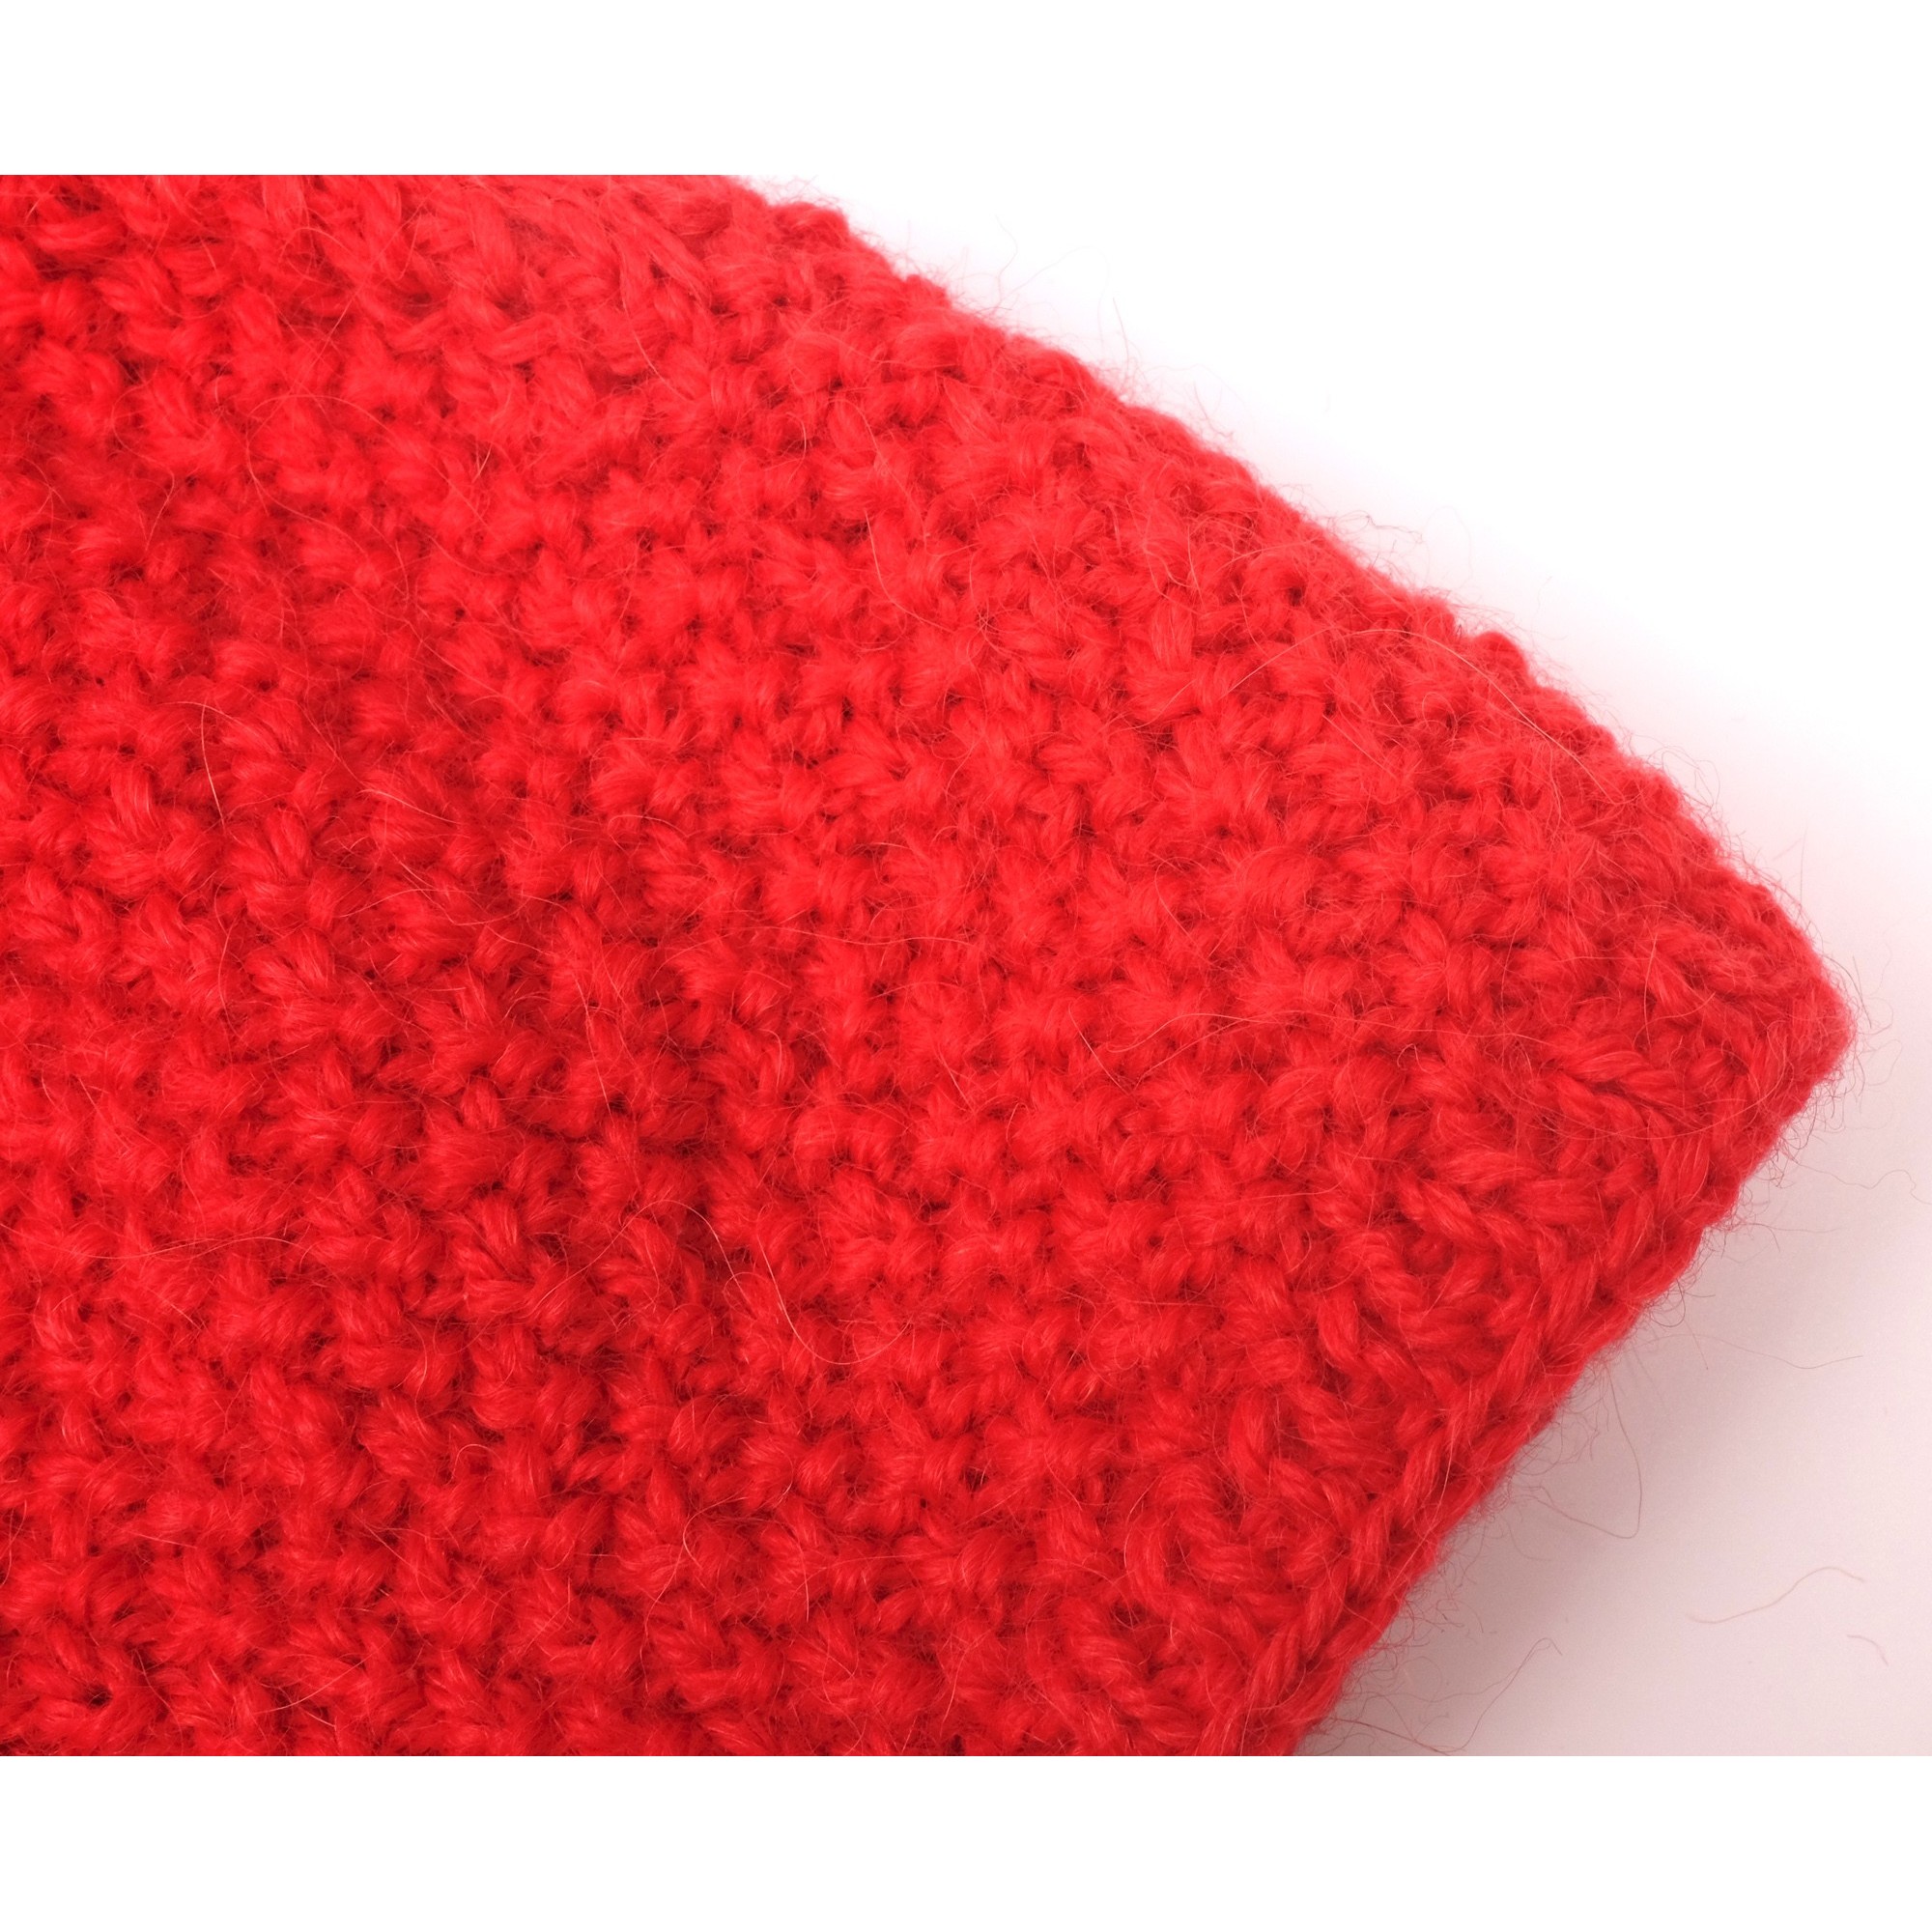 tricoter un bonnet rouge